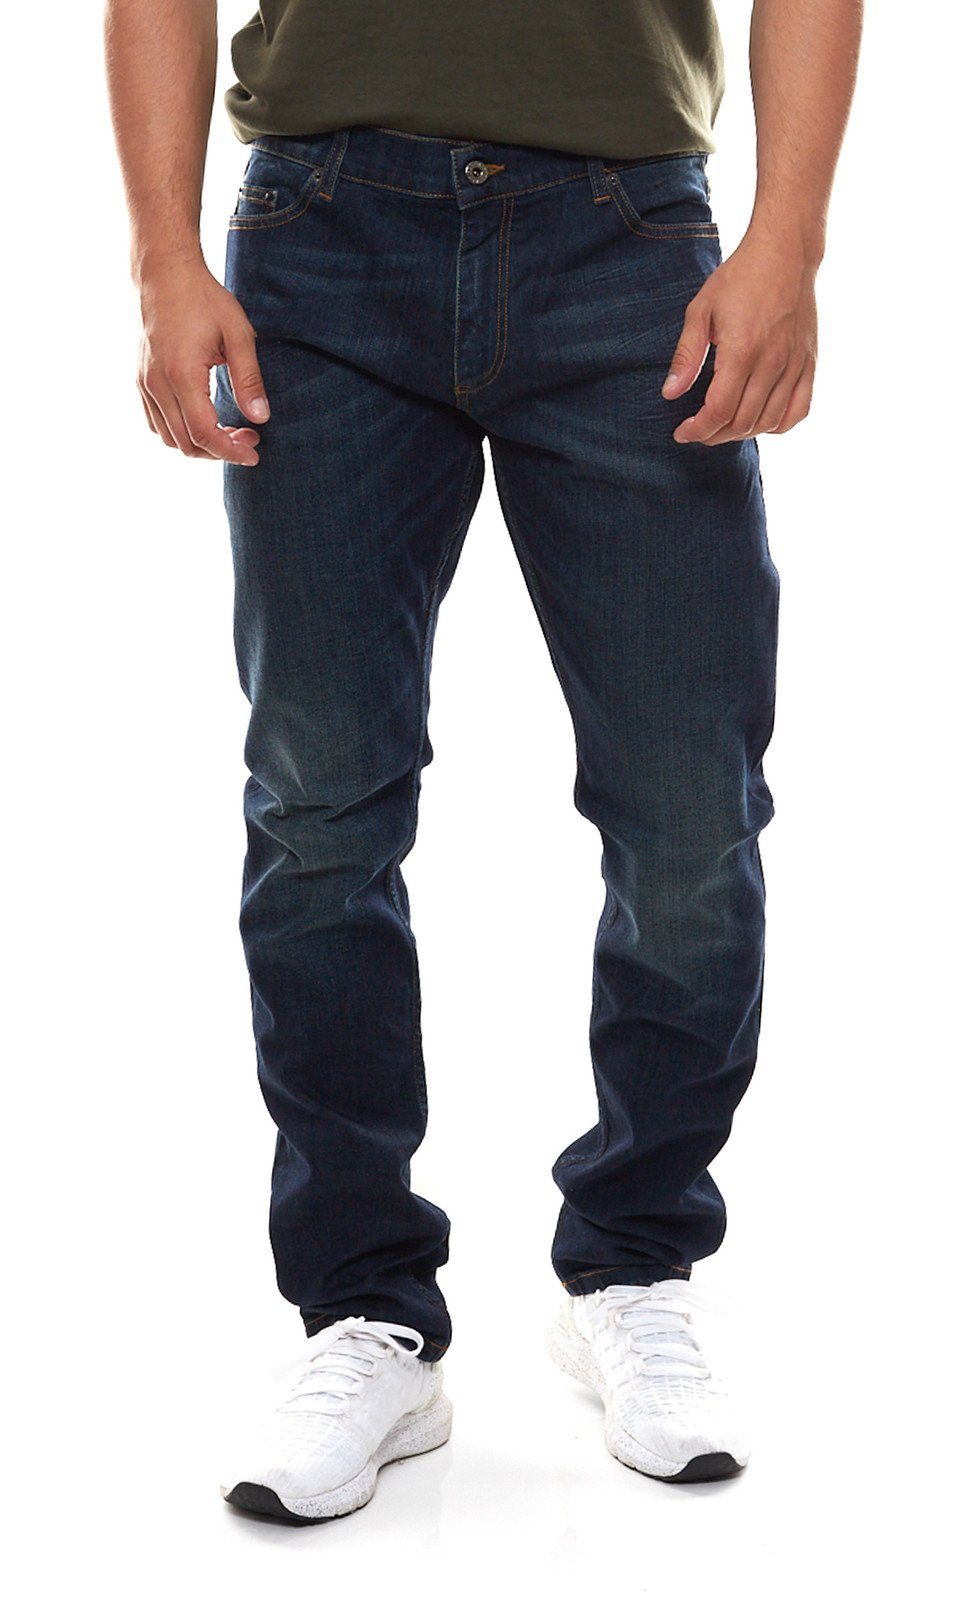 roberto cavalli Regular-fit-Jeans »roberto cavalli Man Woven Baumwoll-Jeans  moderne Slim Fit-Hose für Herren Freizeit-Hose Dunkelblau« online kaufen |  OTTO